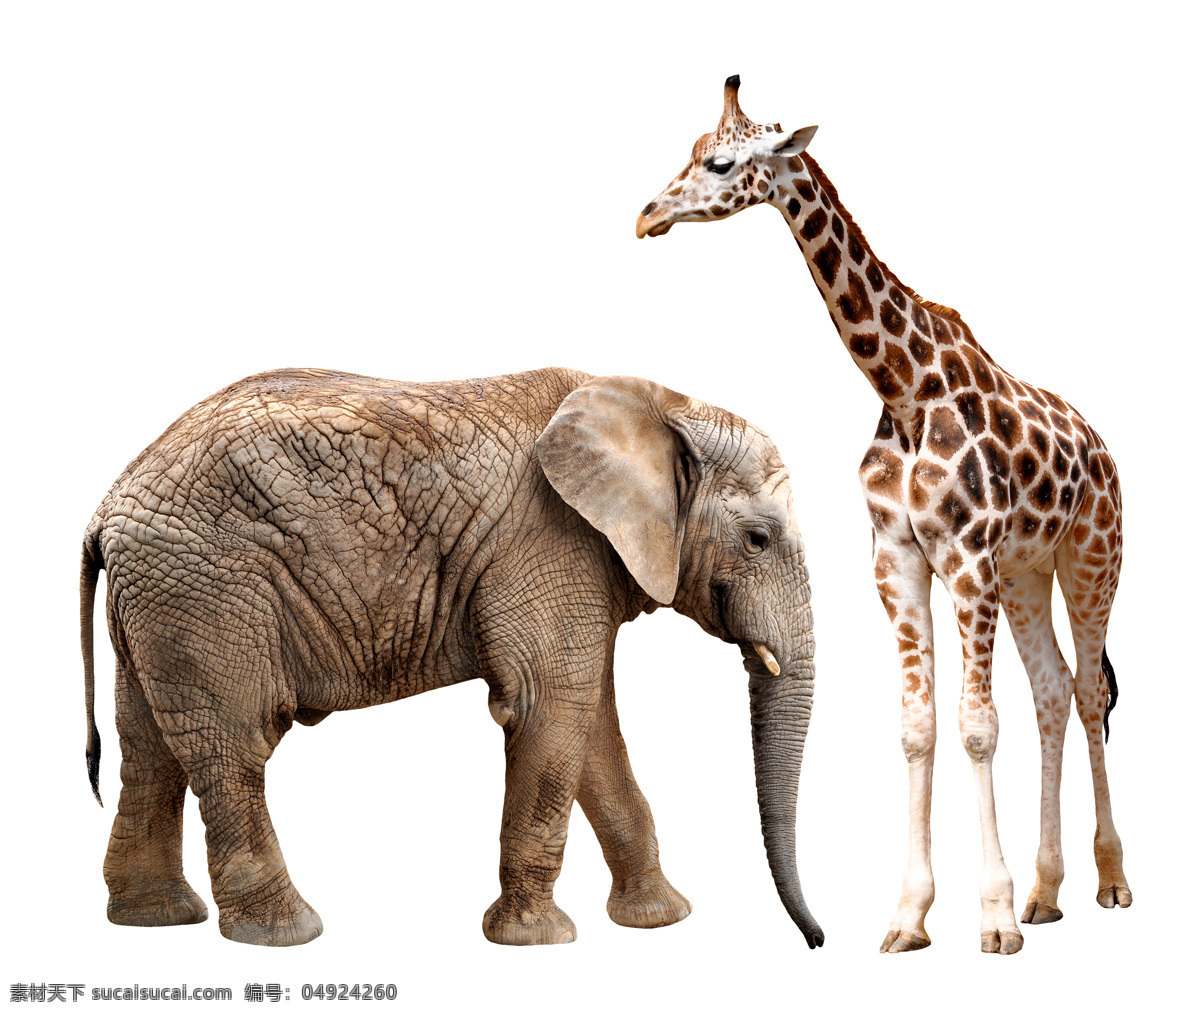 大象 长颈鹿 动物世界 野生动物 动物摄影 陆地动物 生物世界